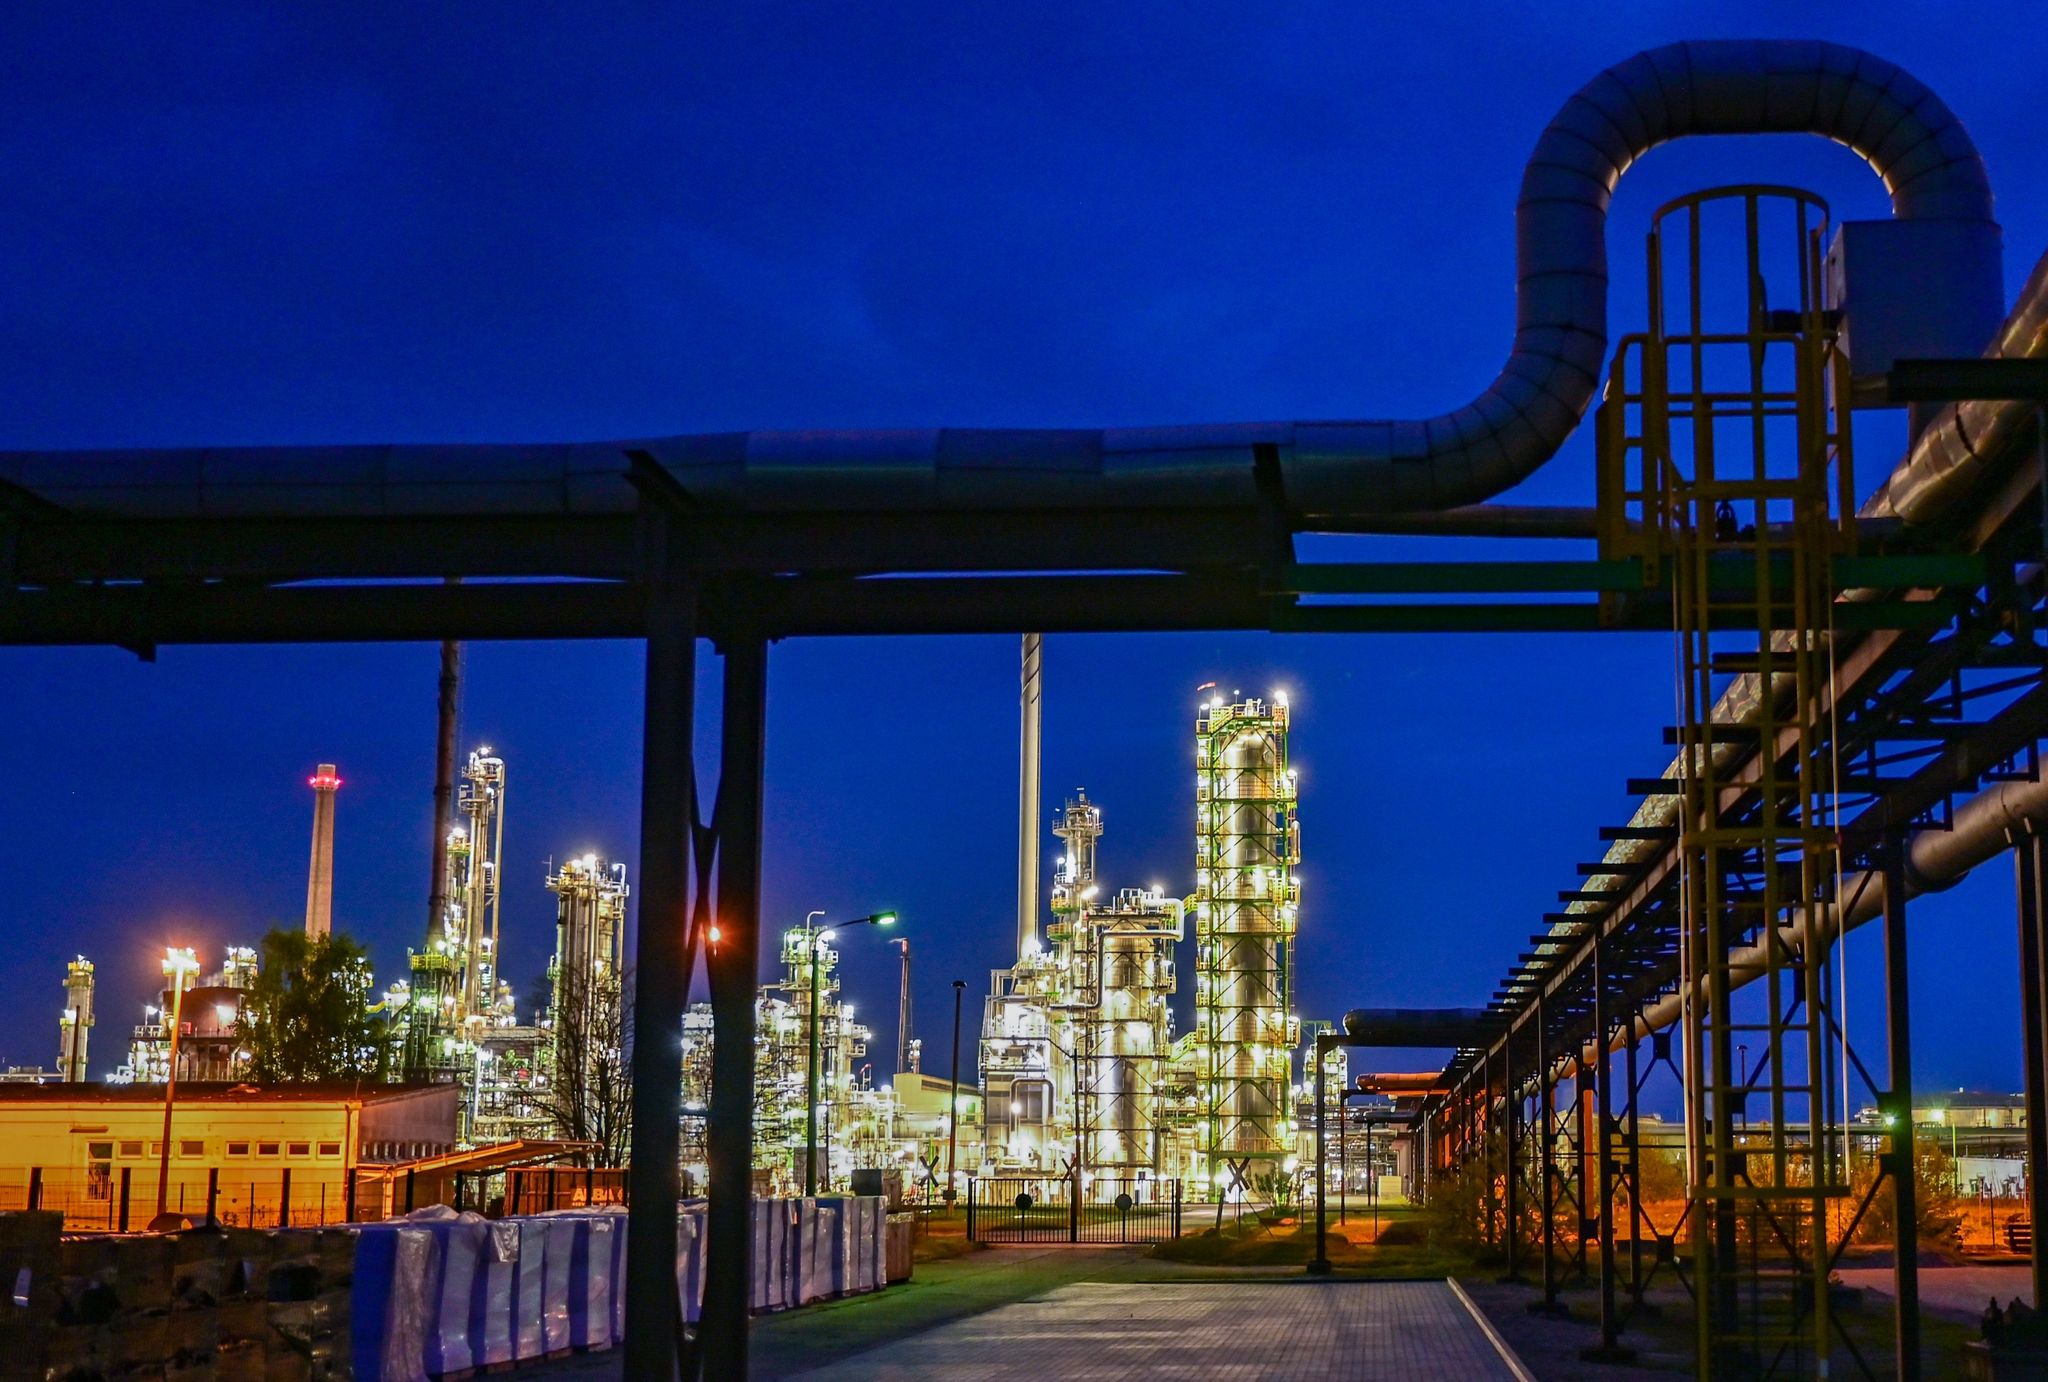 Die Anlagen der Erdölraffinerie auf dem Industriegelände der PCK-Raffinerie GmbH sind beleuchtet.